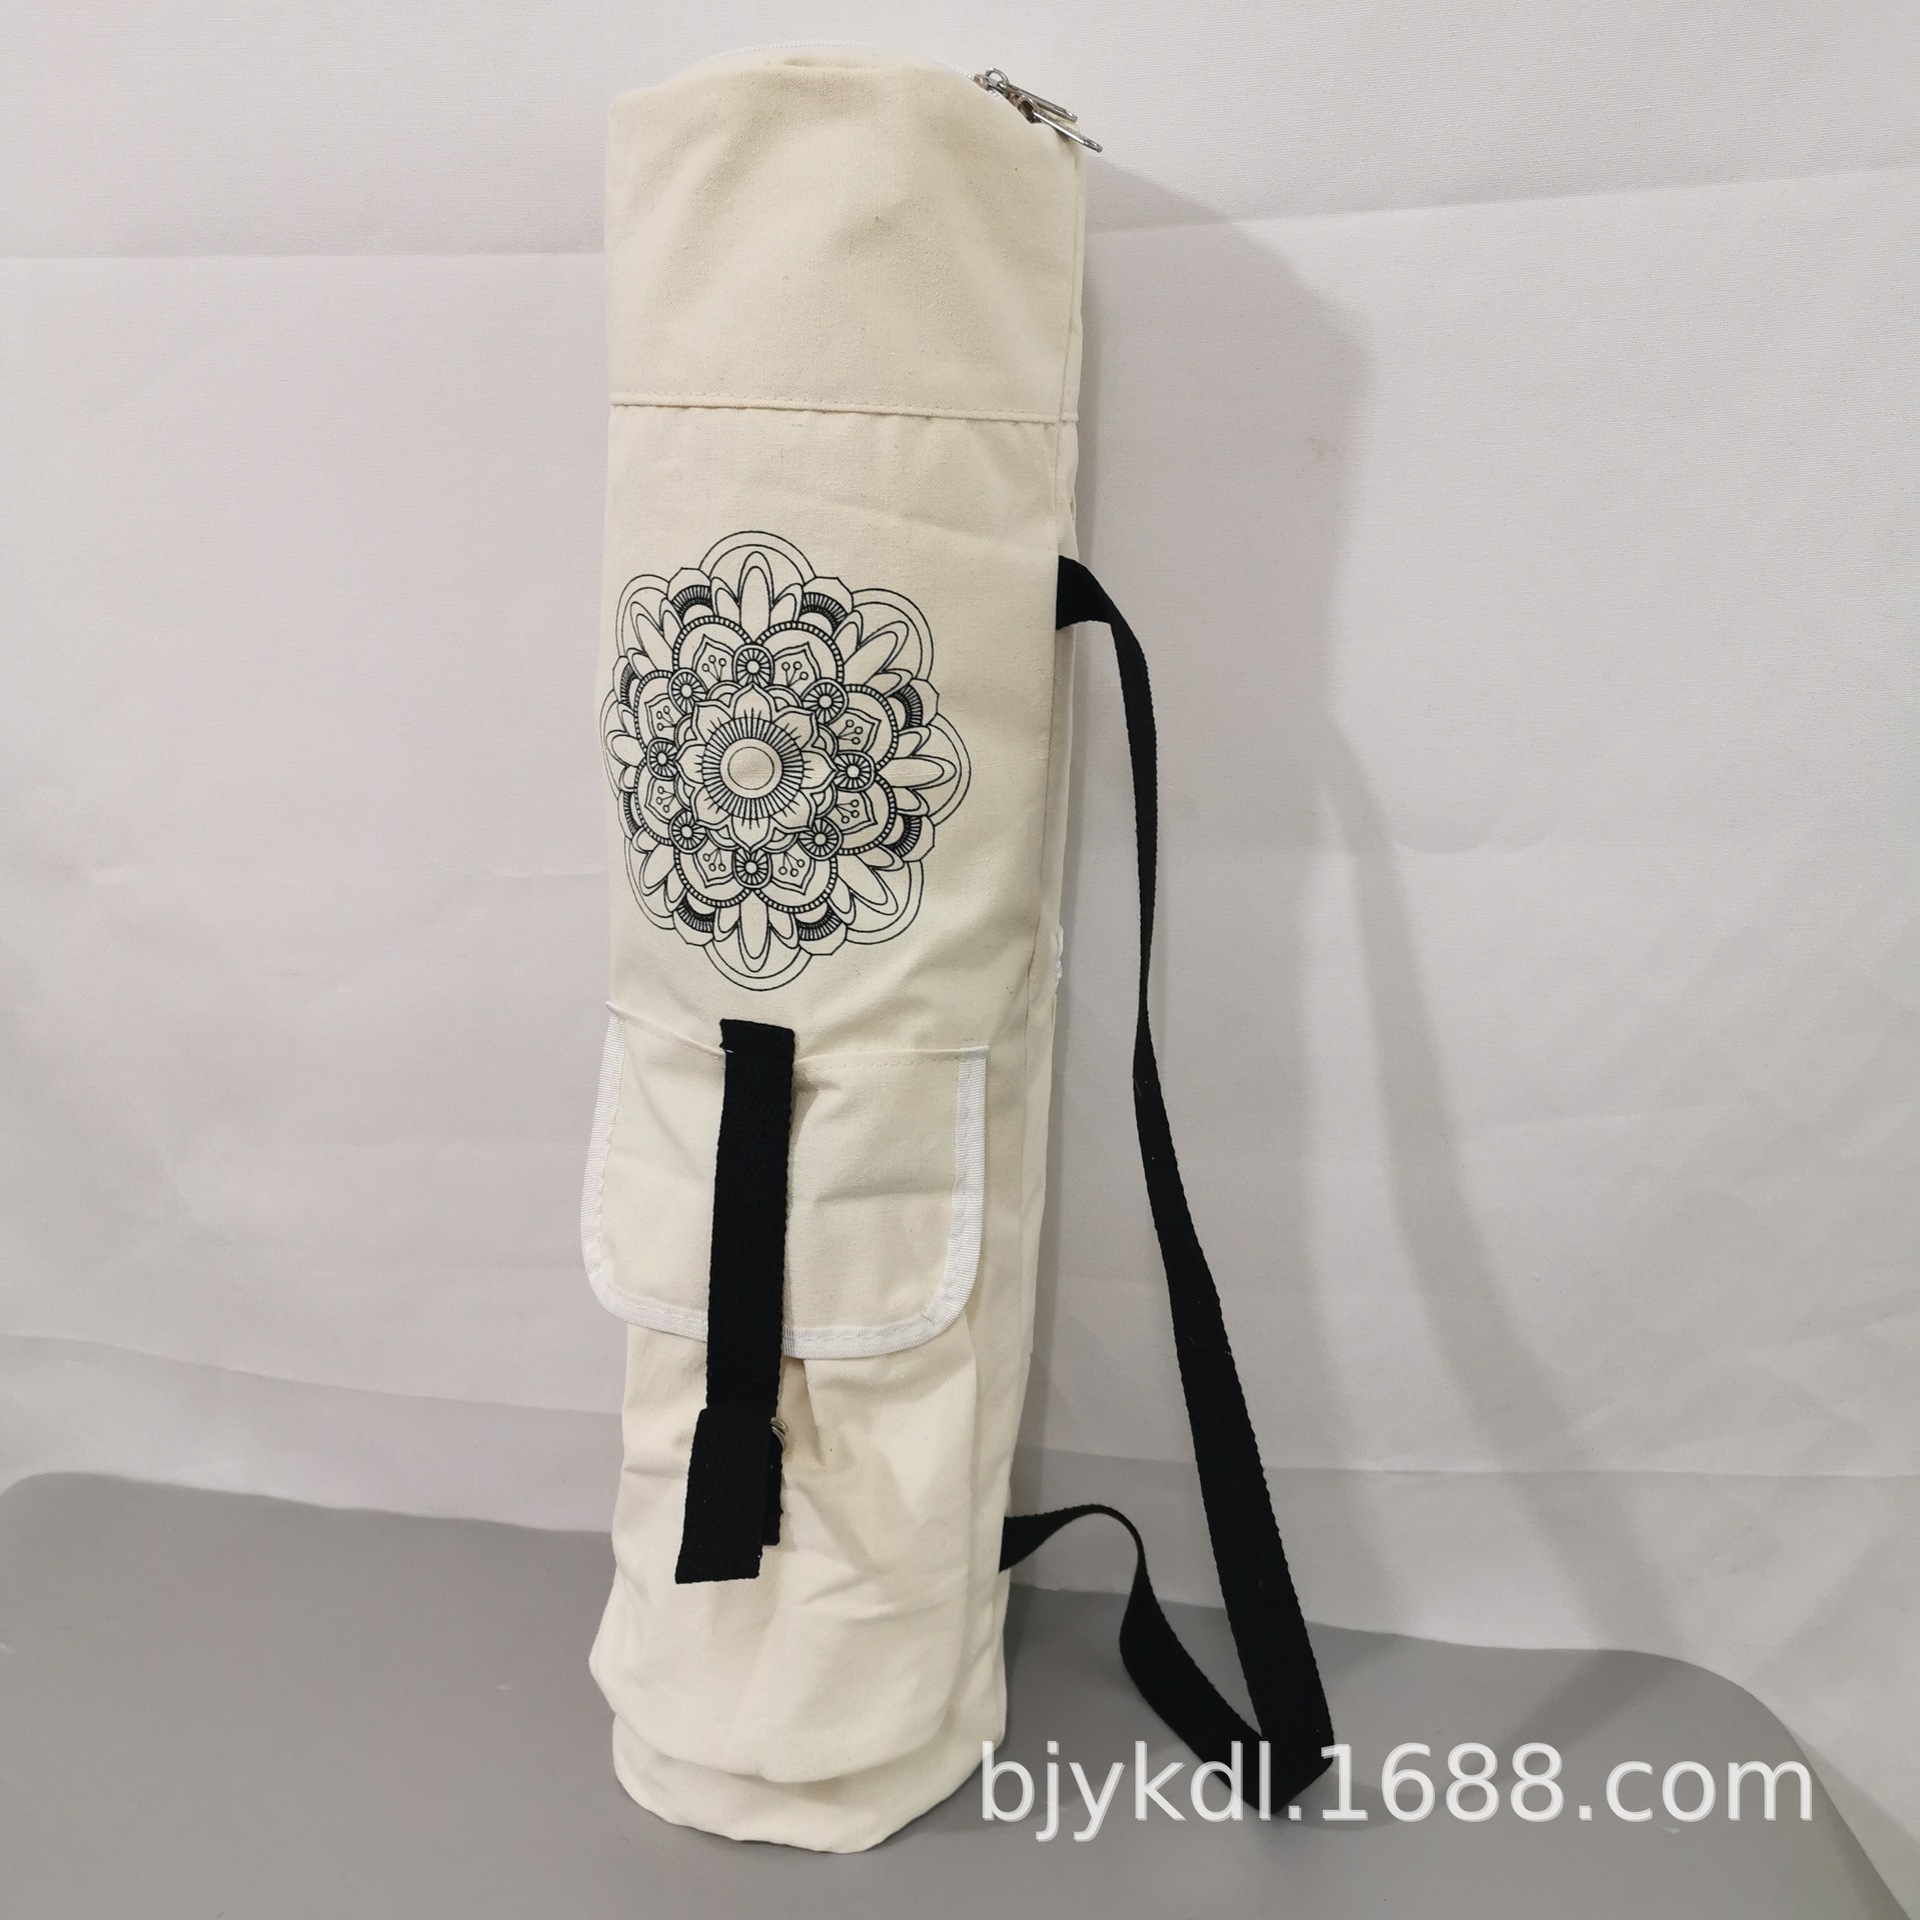 小额定制瑜伽袋、瑜伽垫背包 瑜伽包、瑜伽垫袋瑜伽垫收纳整理袋